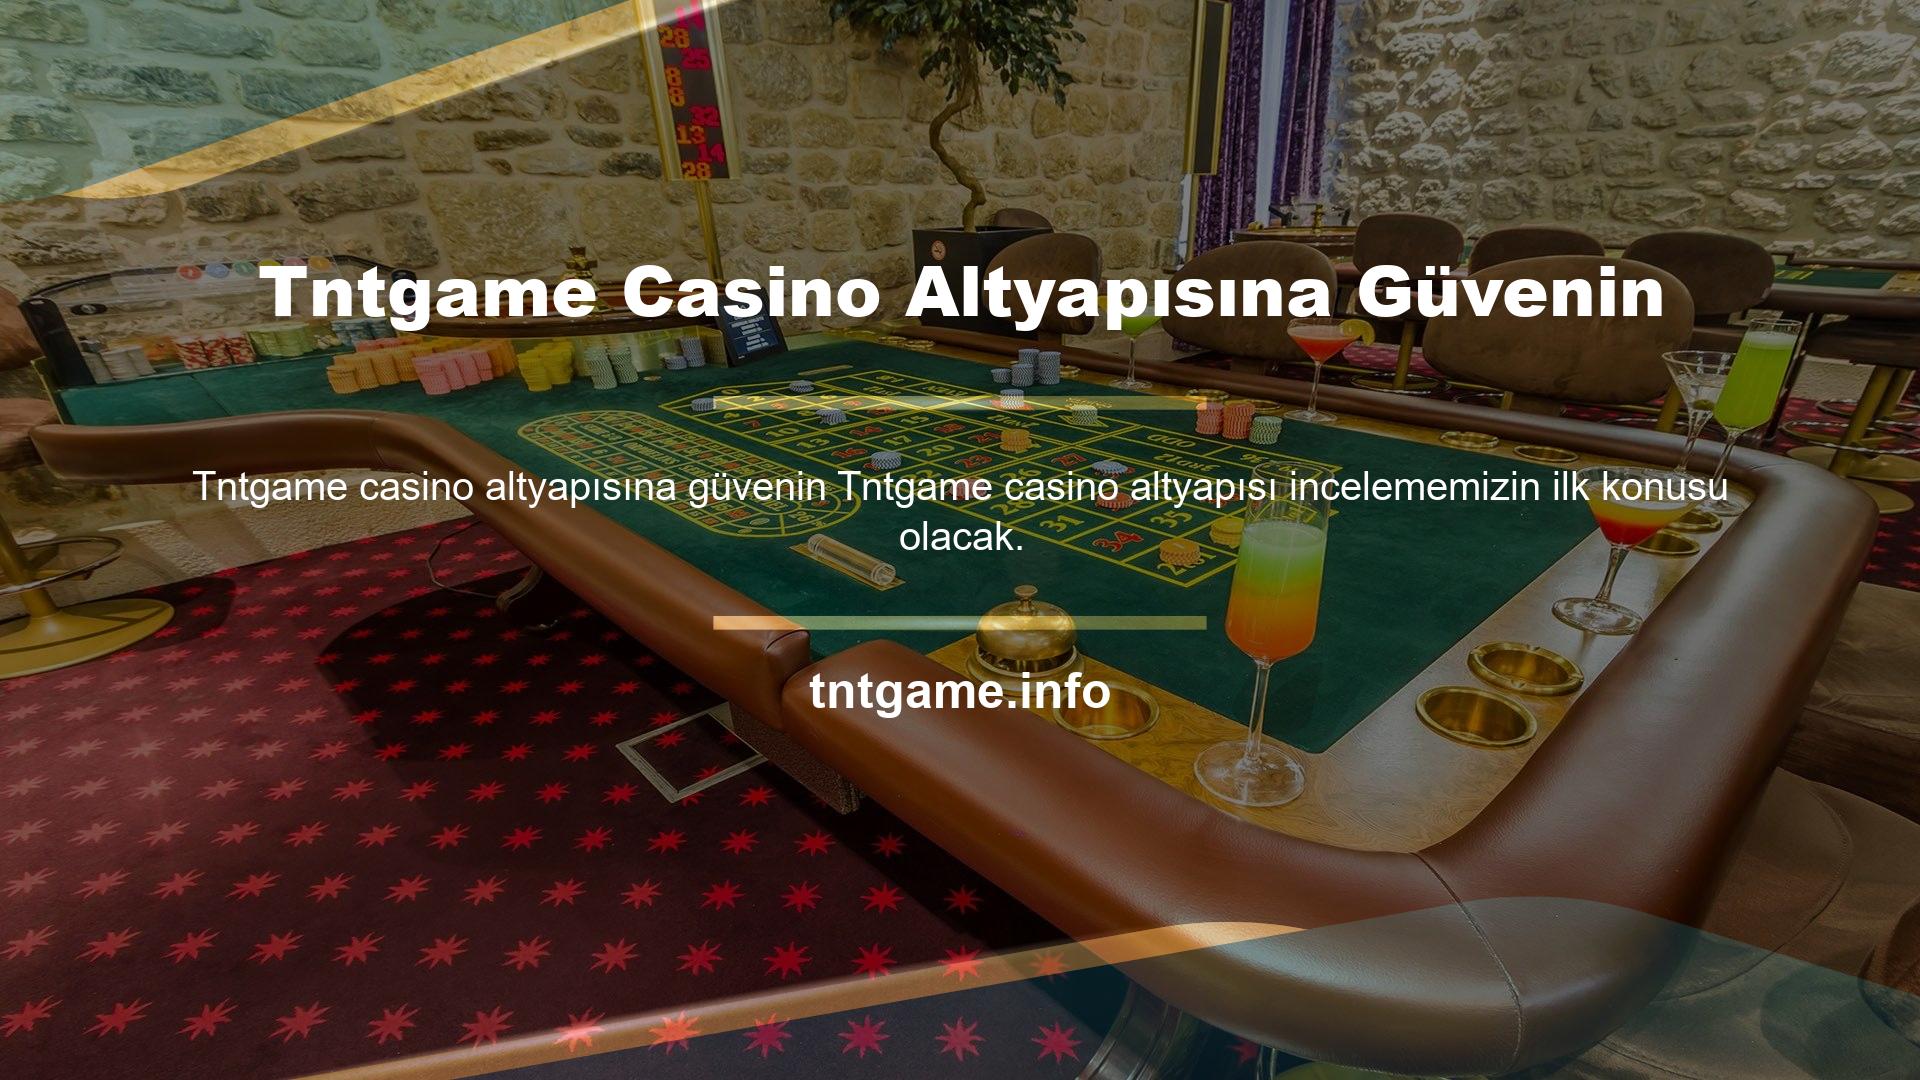 Tntgame Casino Altyapısına Güvenin